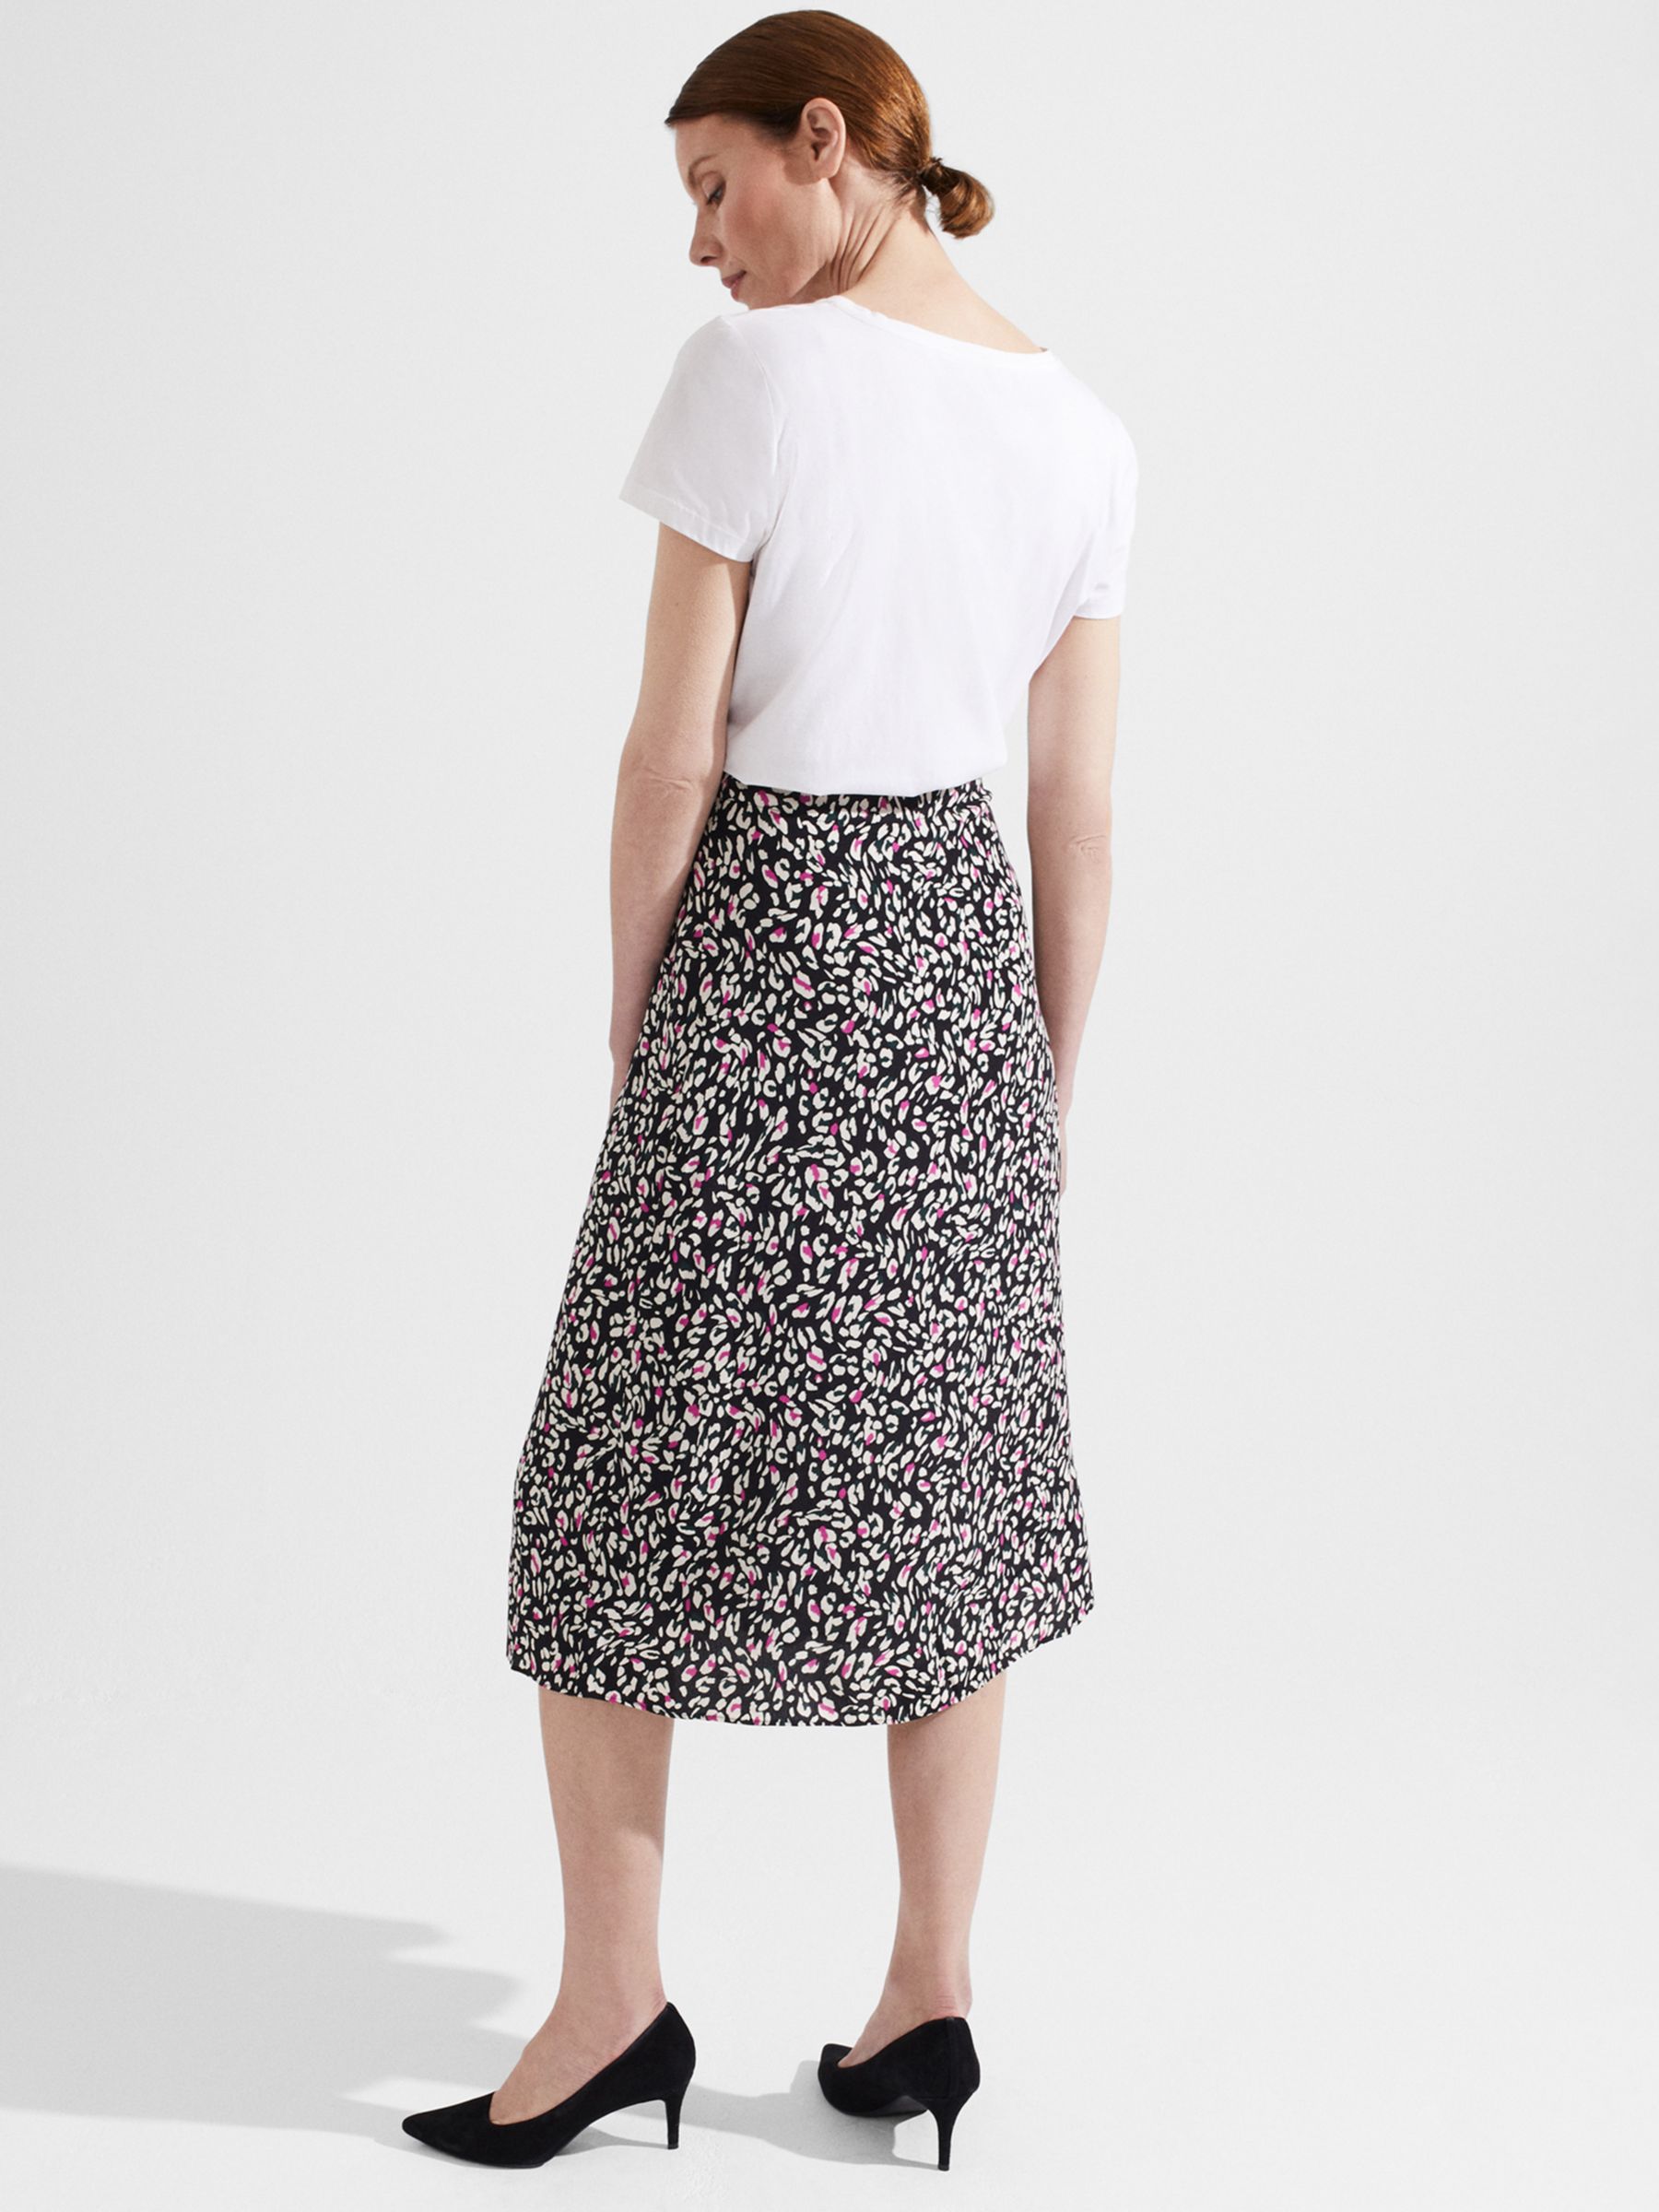 Hobbs Annette Floral Skirt, Black at John Lewis & Partners